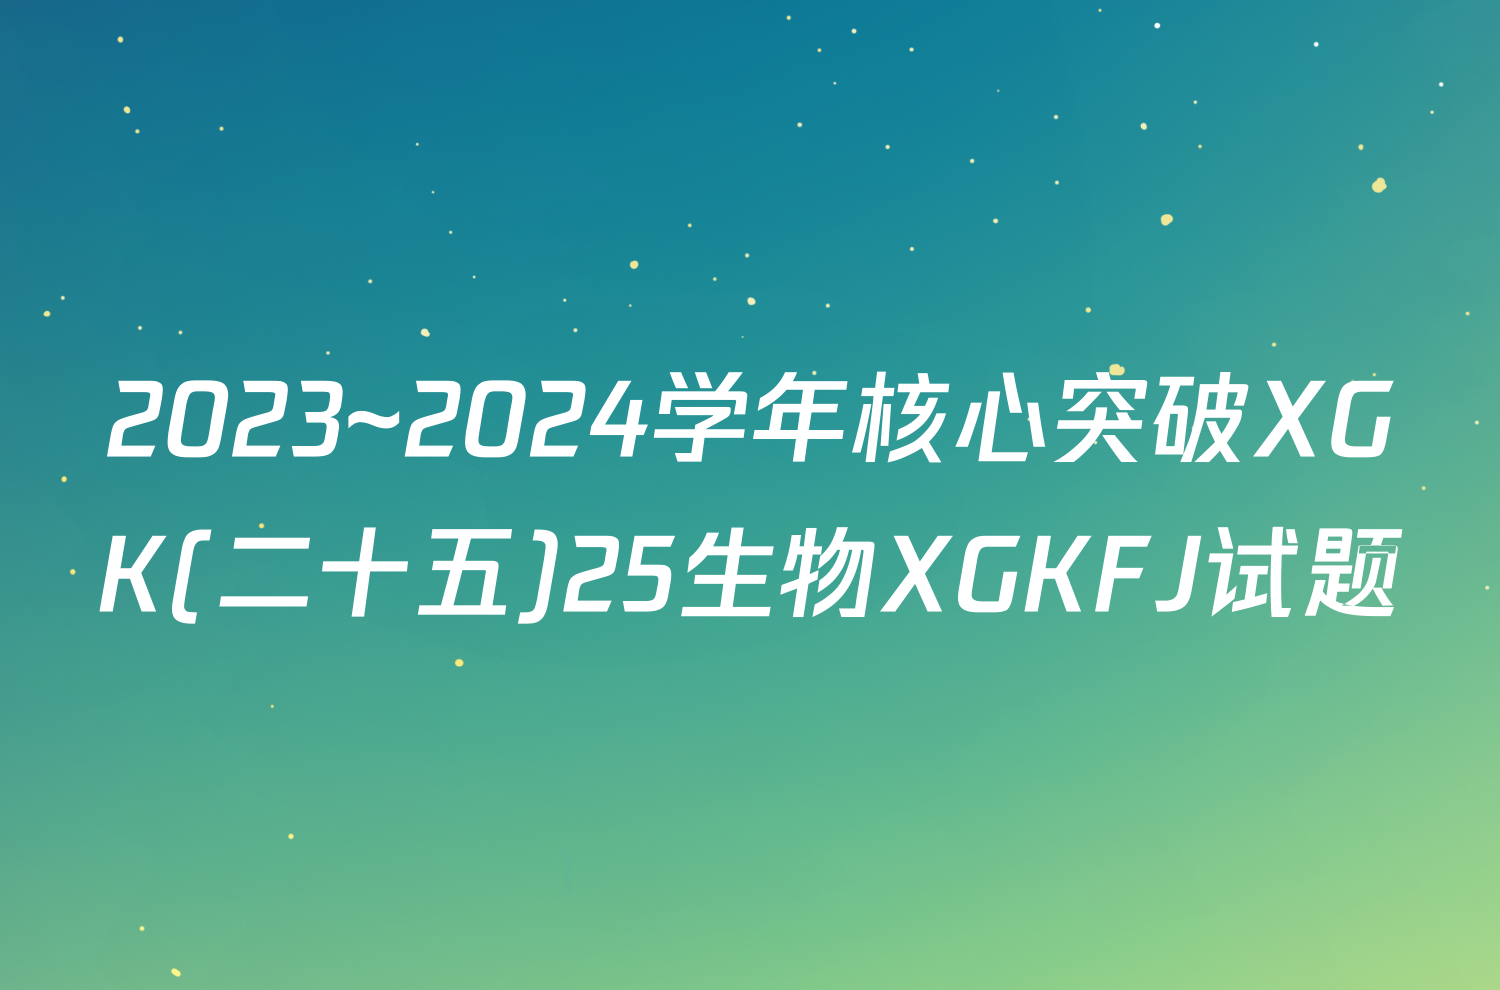 2023~2024学年核心突破XGK(二十五)25生物XGKFJ试题